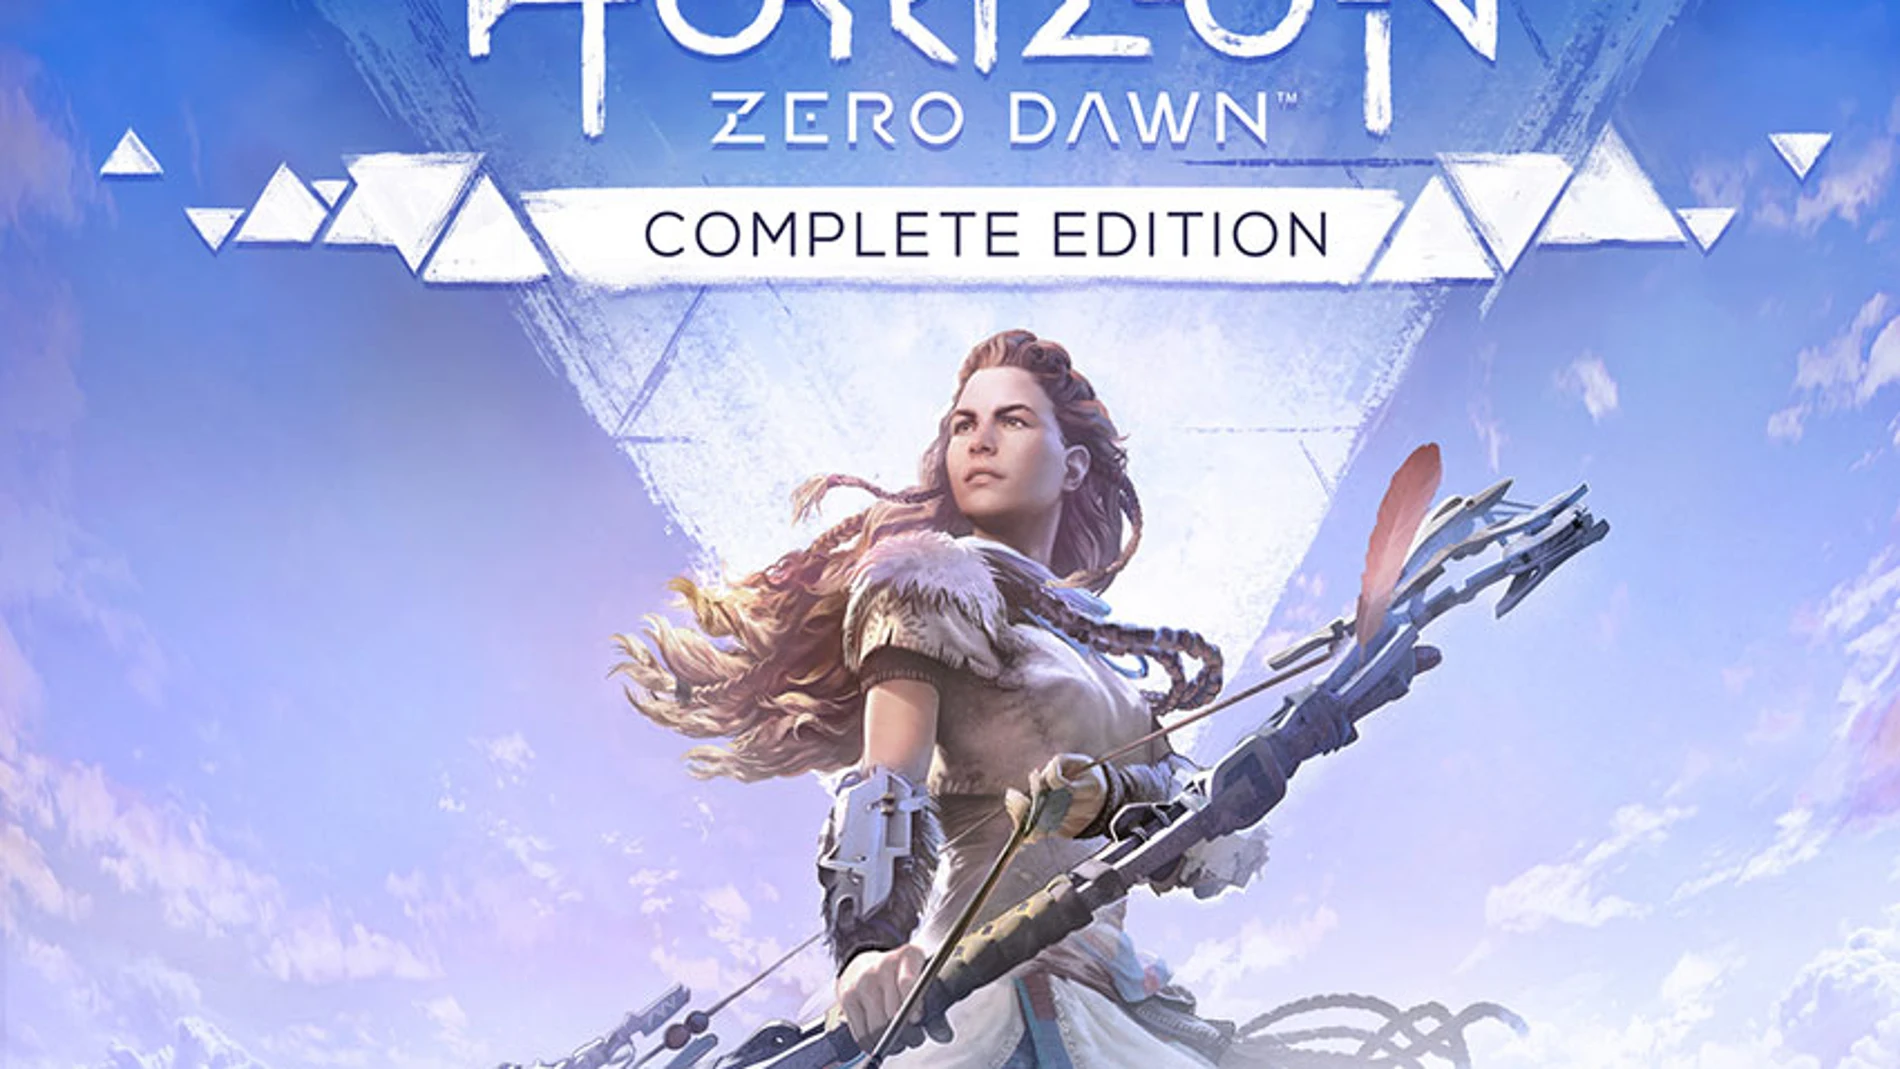 Descubre las características y fecha de lanzamiento de Horizon Zero Dawn Complete Edition